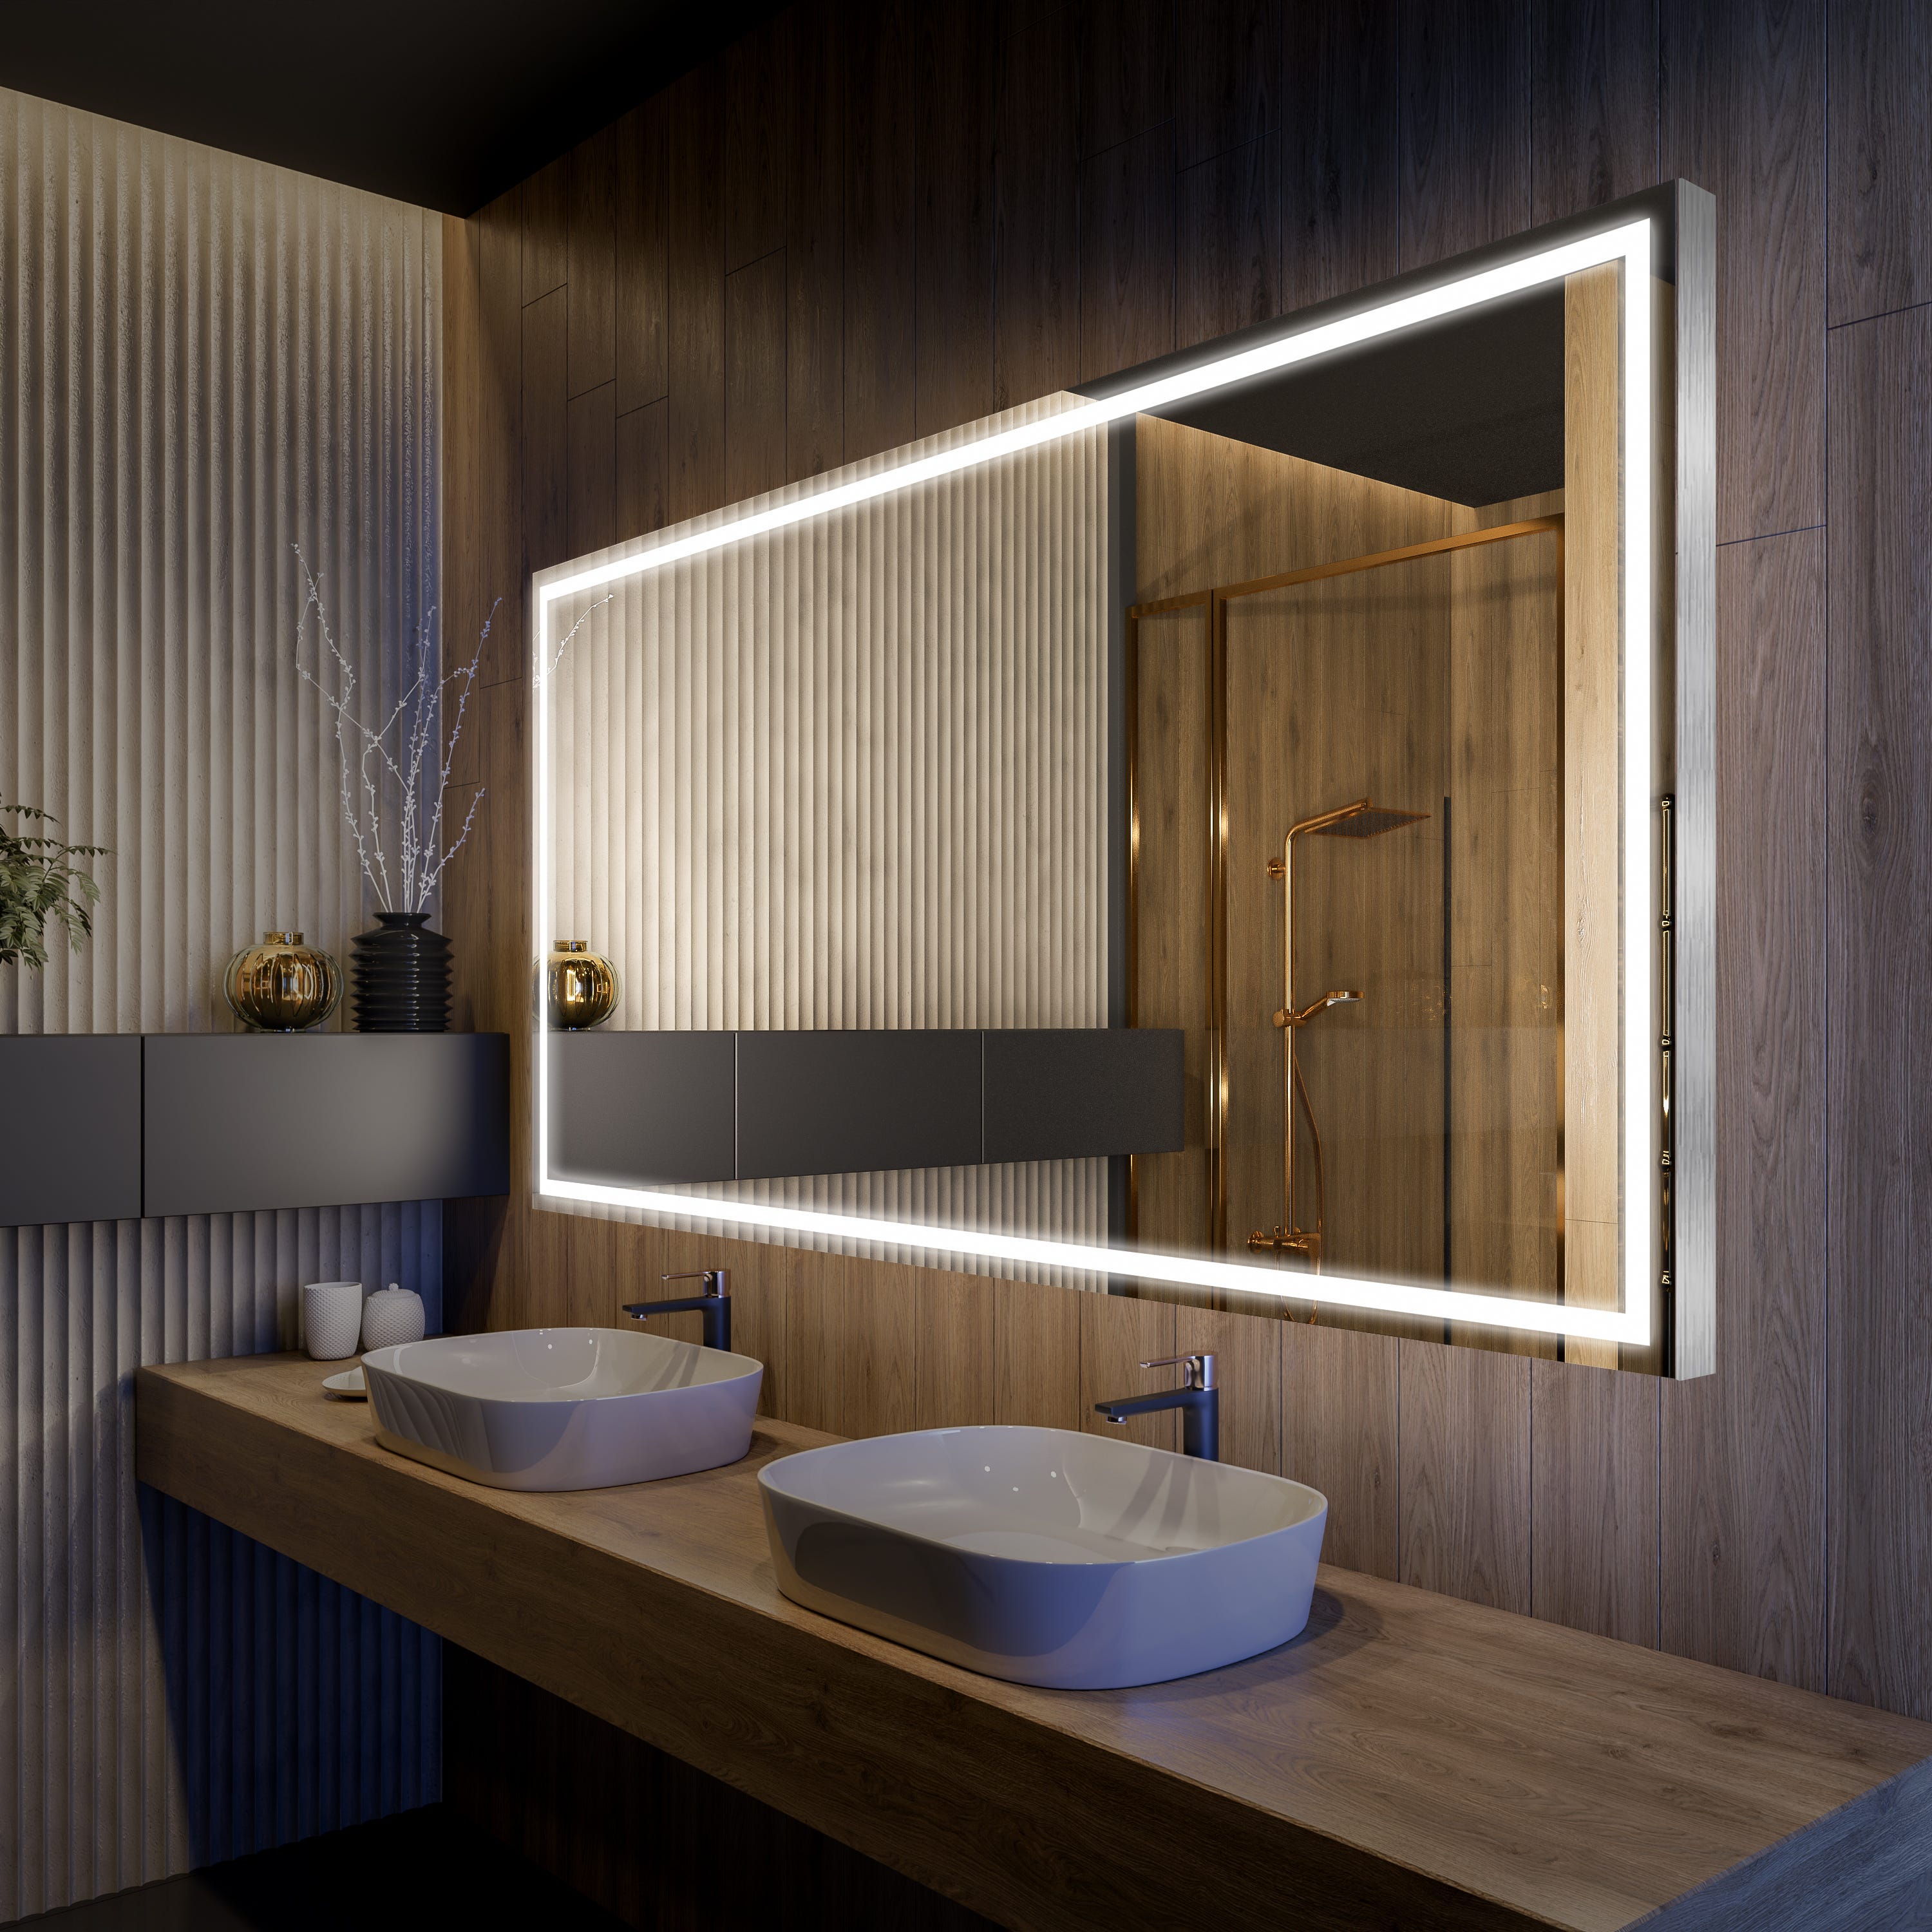 Artforma - Espelho com iluminação LED L58 para casa de banho